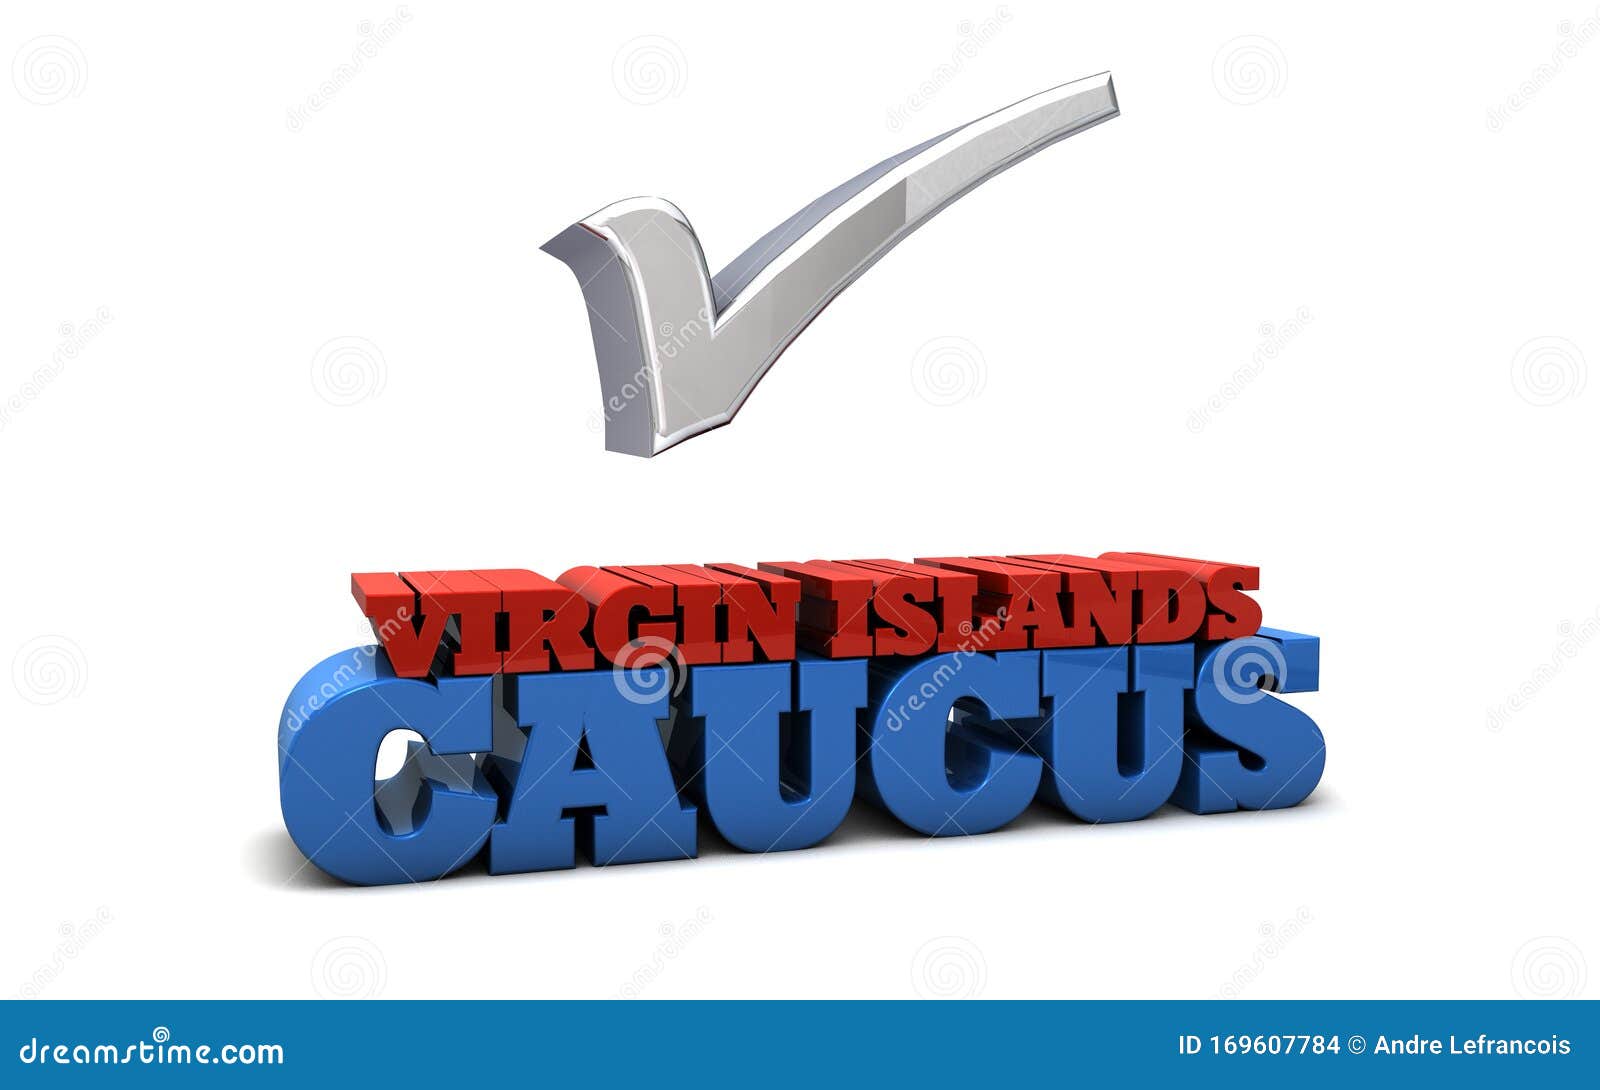 virgin islands caucus